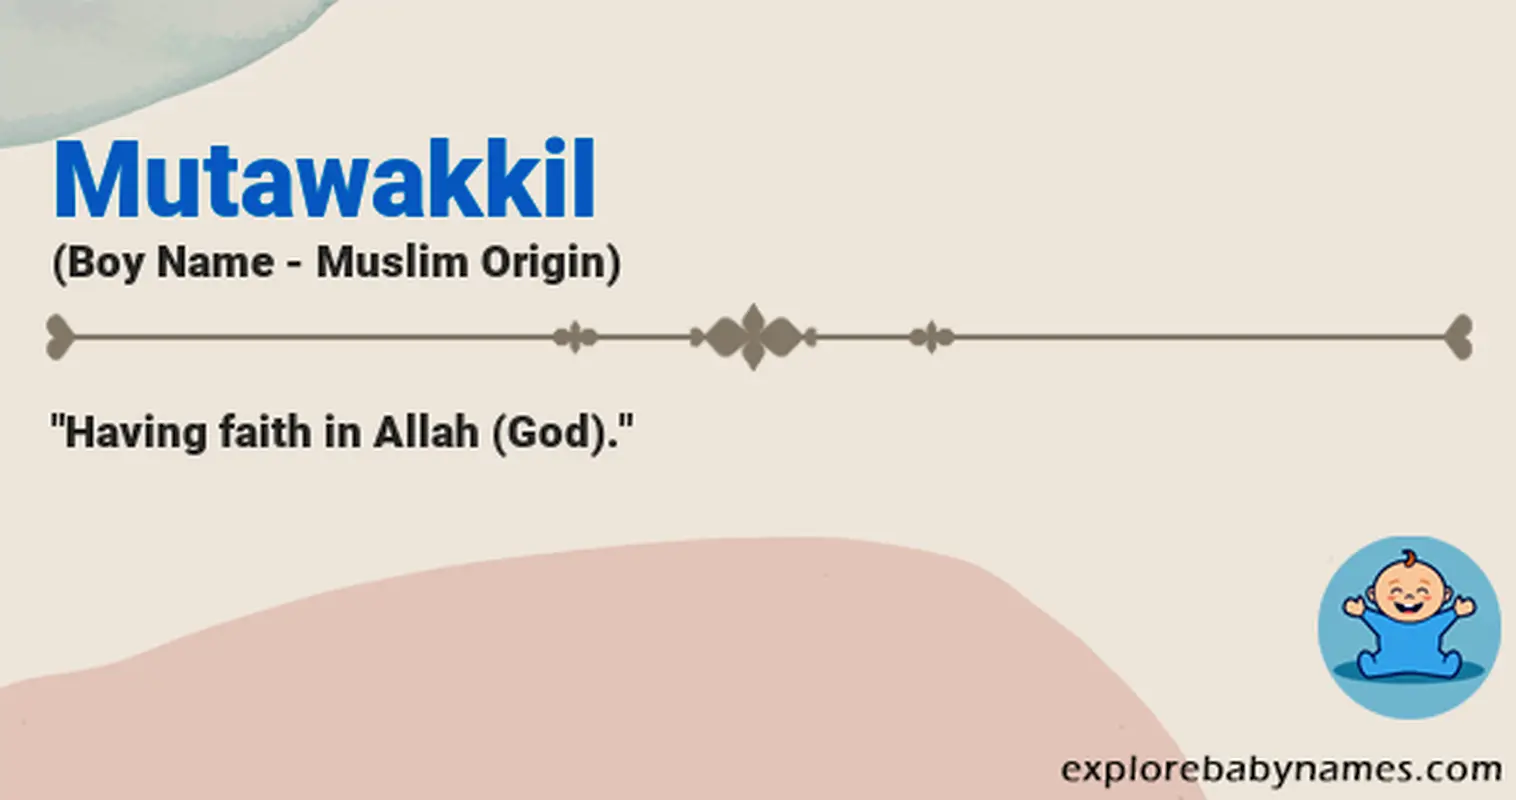 Meaning of Mutawakkil